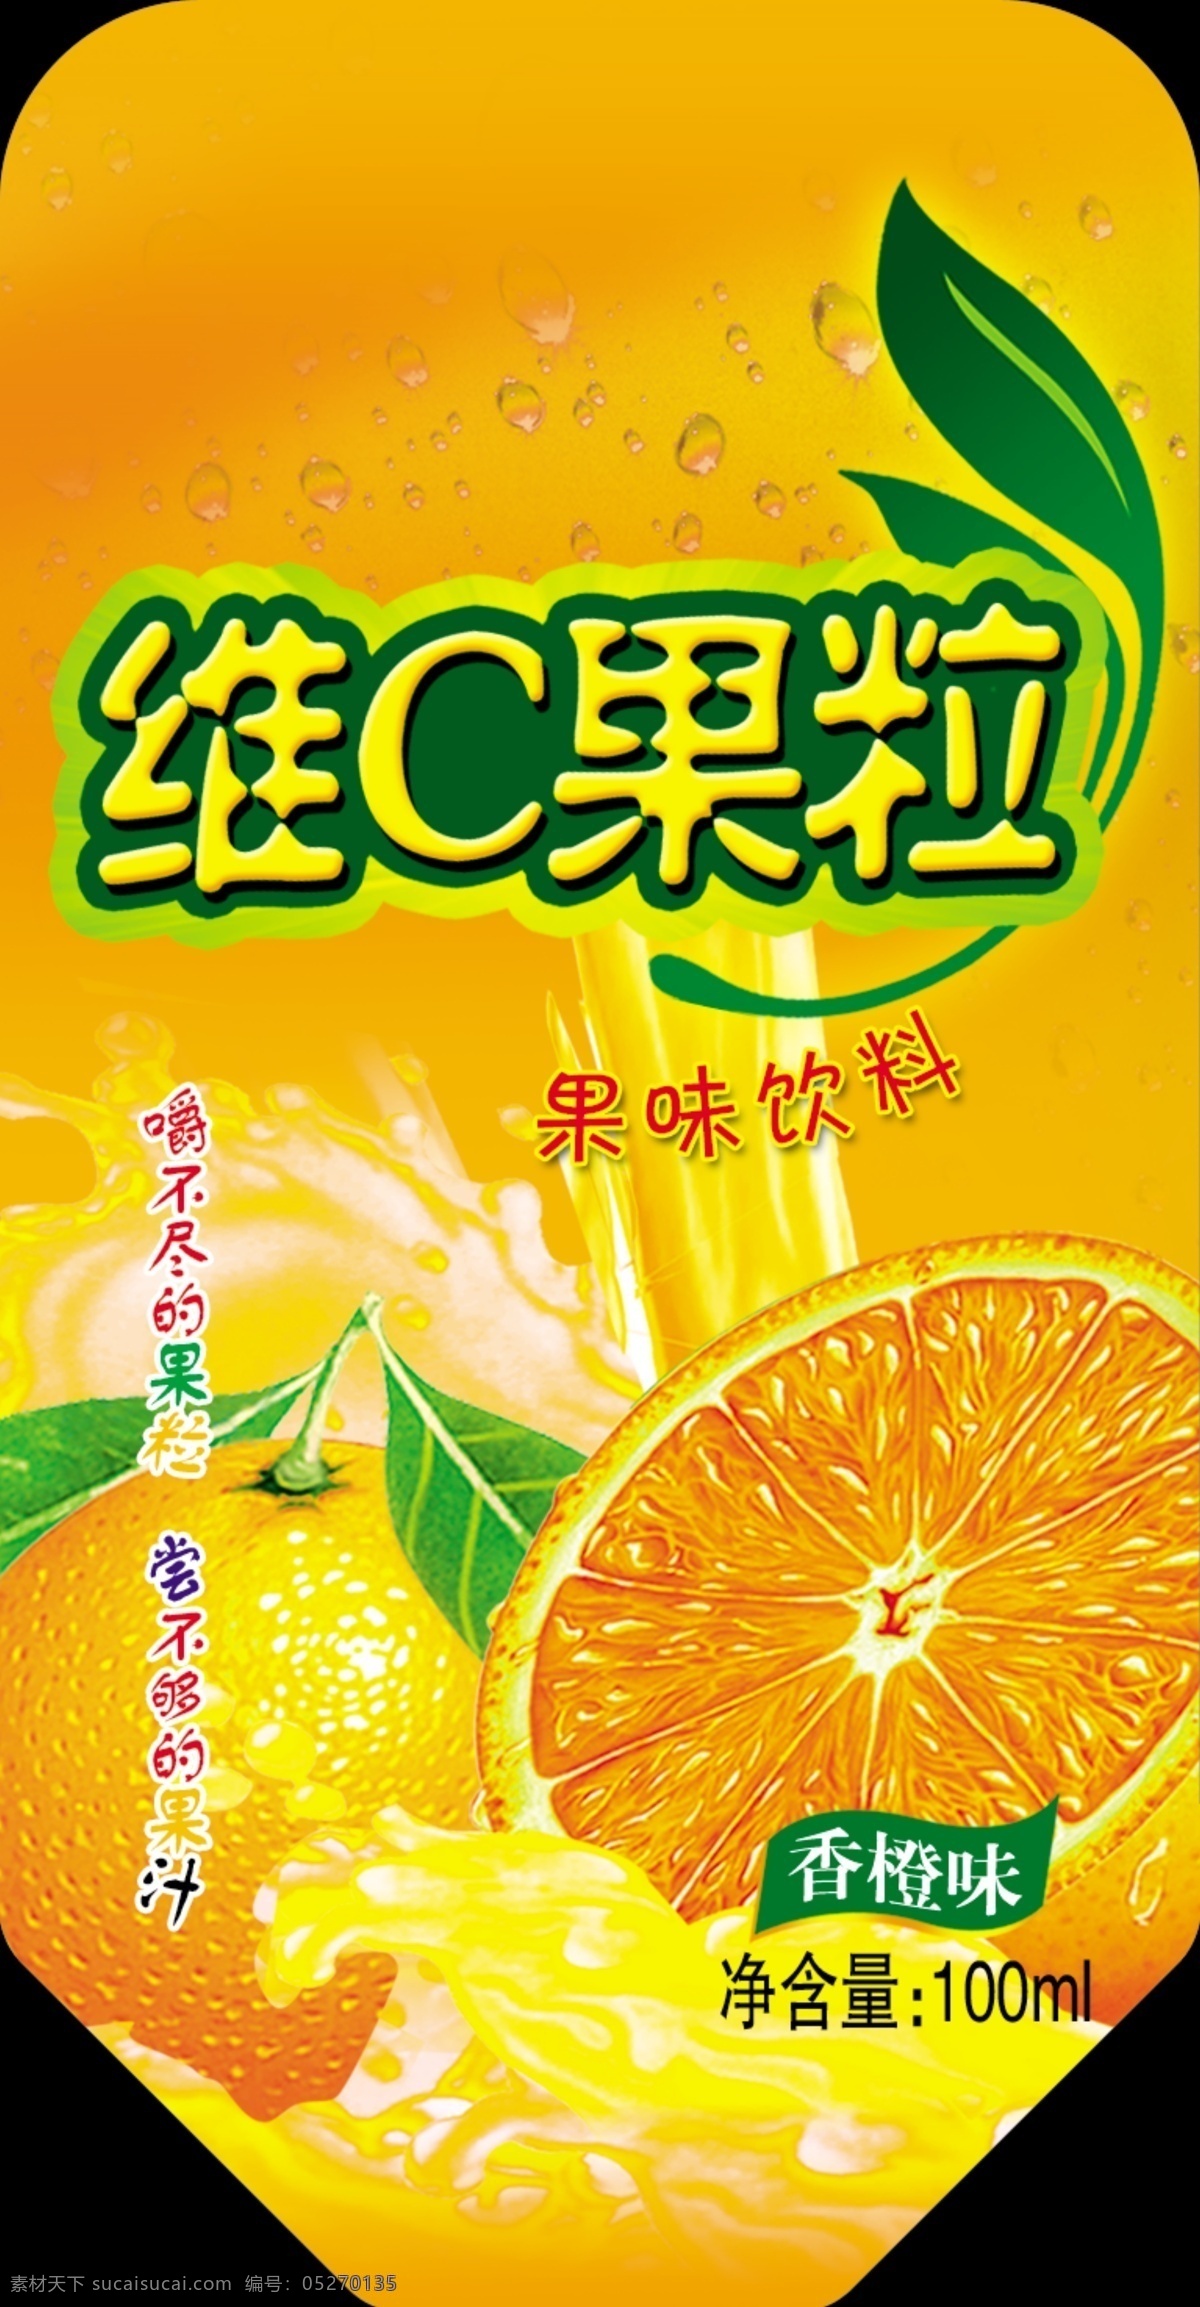 维c果粒 橙子 果汁 水珠 叶子 果冻 招贴设计 橙色